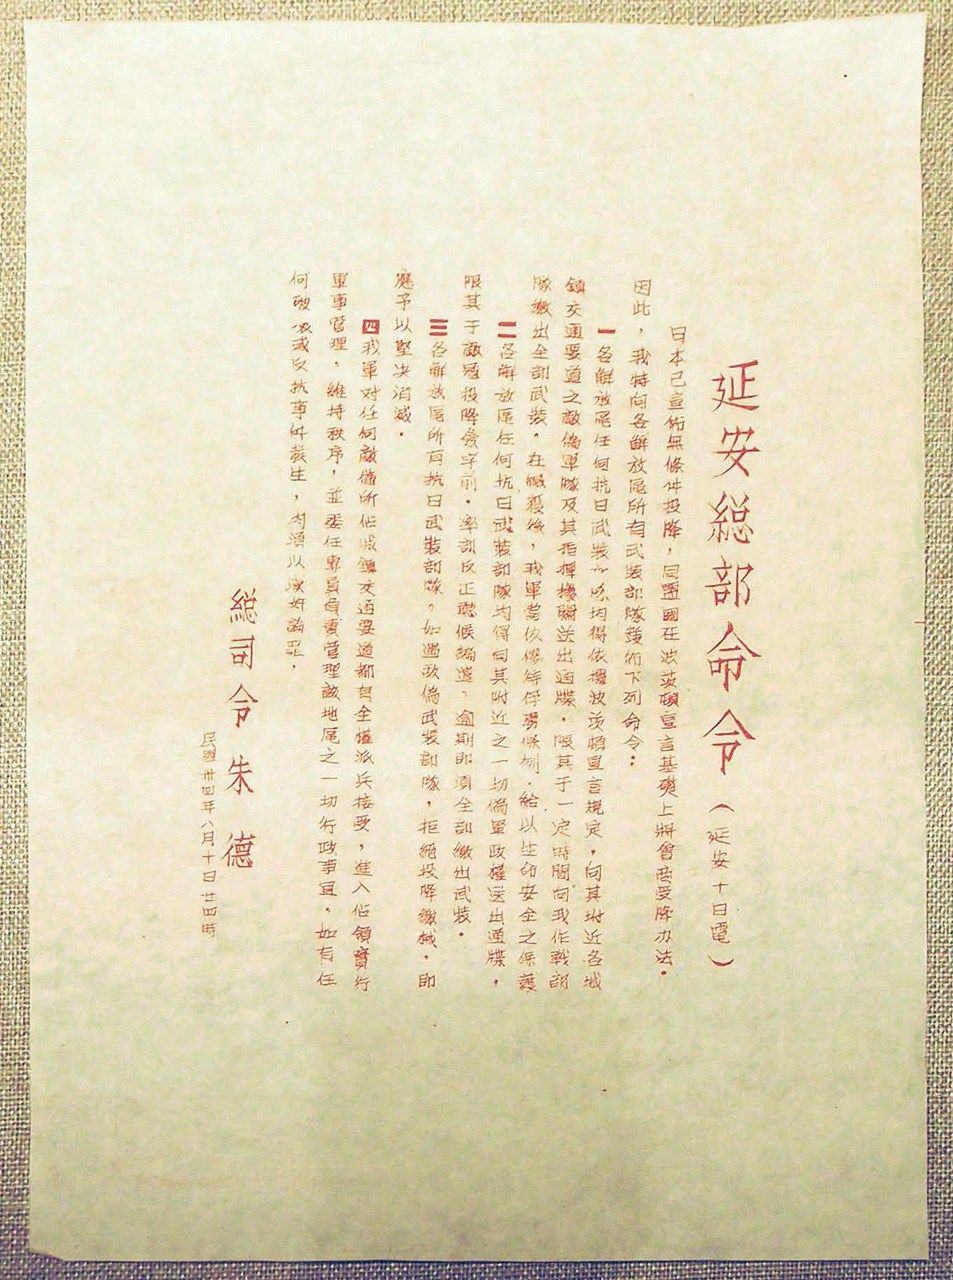 أوامر خطية من مقر قيادة الحزب الشيوعي الصيني في يانان بتاريخ 10 أغسطس/آب عام 1945 تحتوي على تعليمات لنزع سلاح القوات اليابانية عند استسلام اليابان (المتحف الوطني الصيني، صورة من الكاتب).